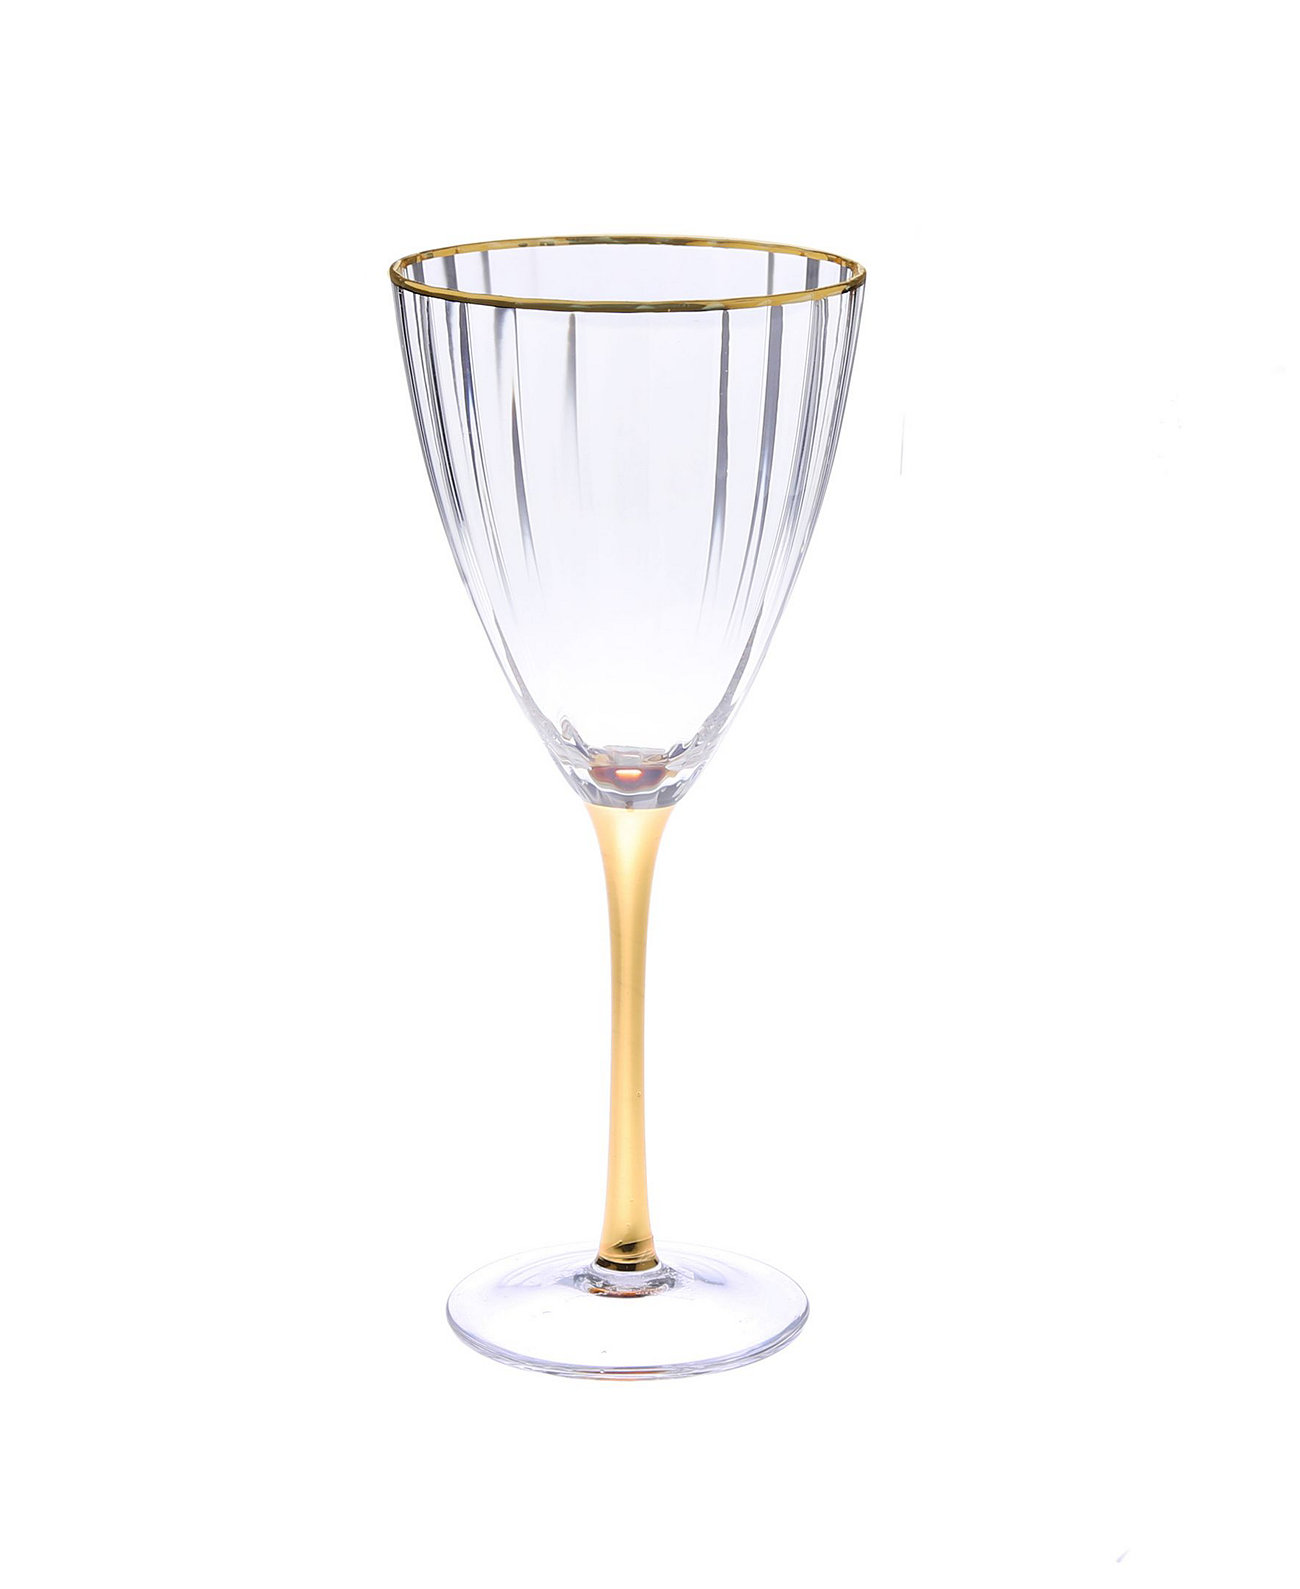 Набор из 6 текстурных стаканов для воды с прямыми линиями, ножкой и ободком яркого золотого тона Classic Touch